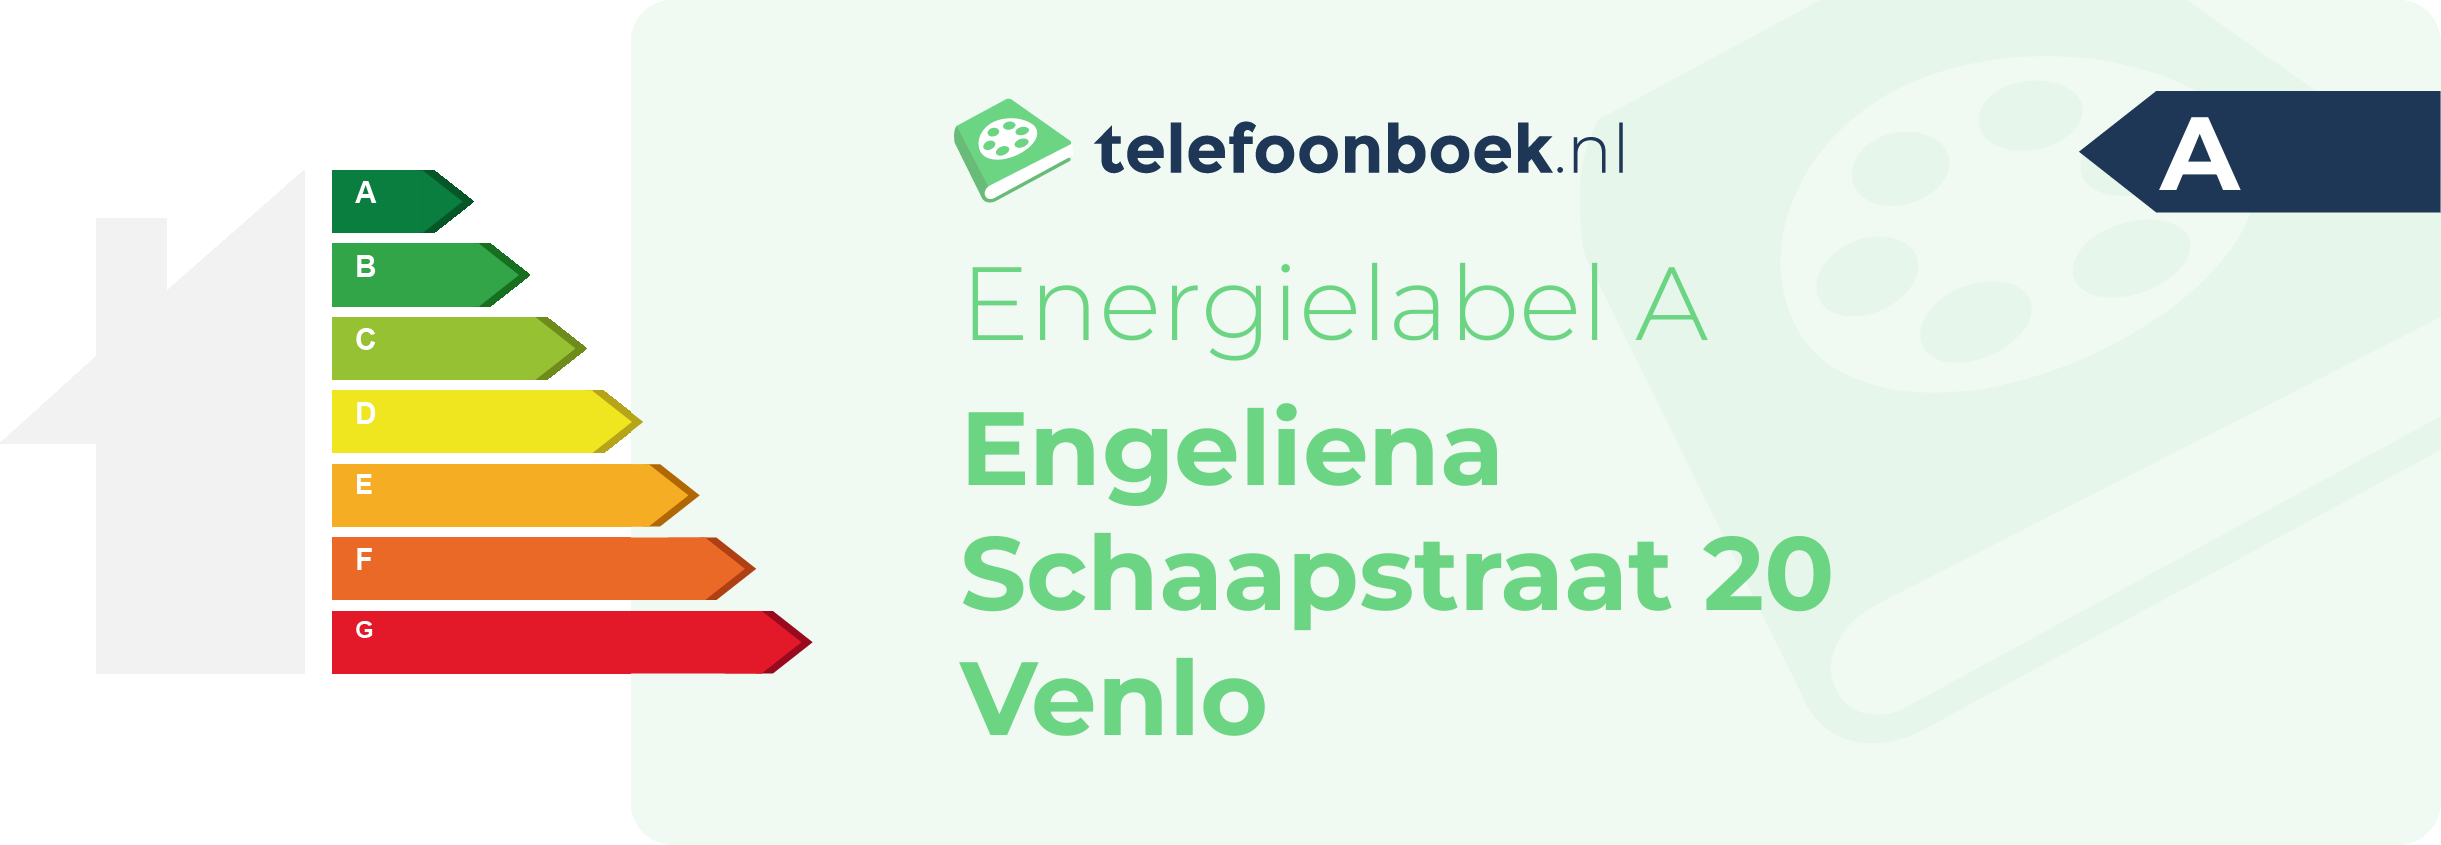 Energielabel Engeliena Schaapstraat 20 Venlo